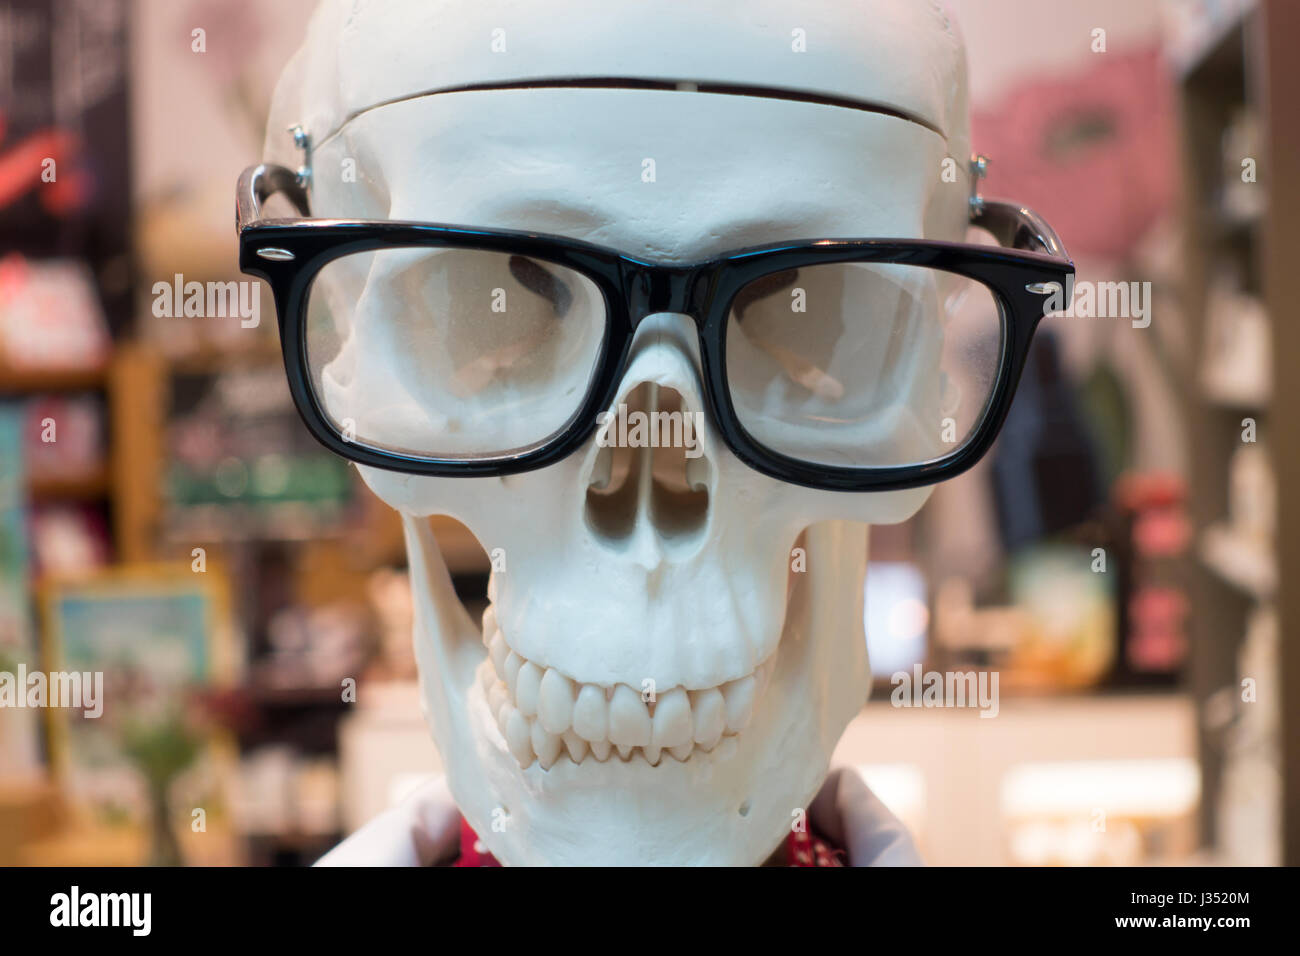 Skull face wearing glasses Stock Photo